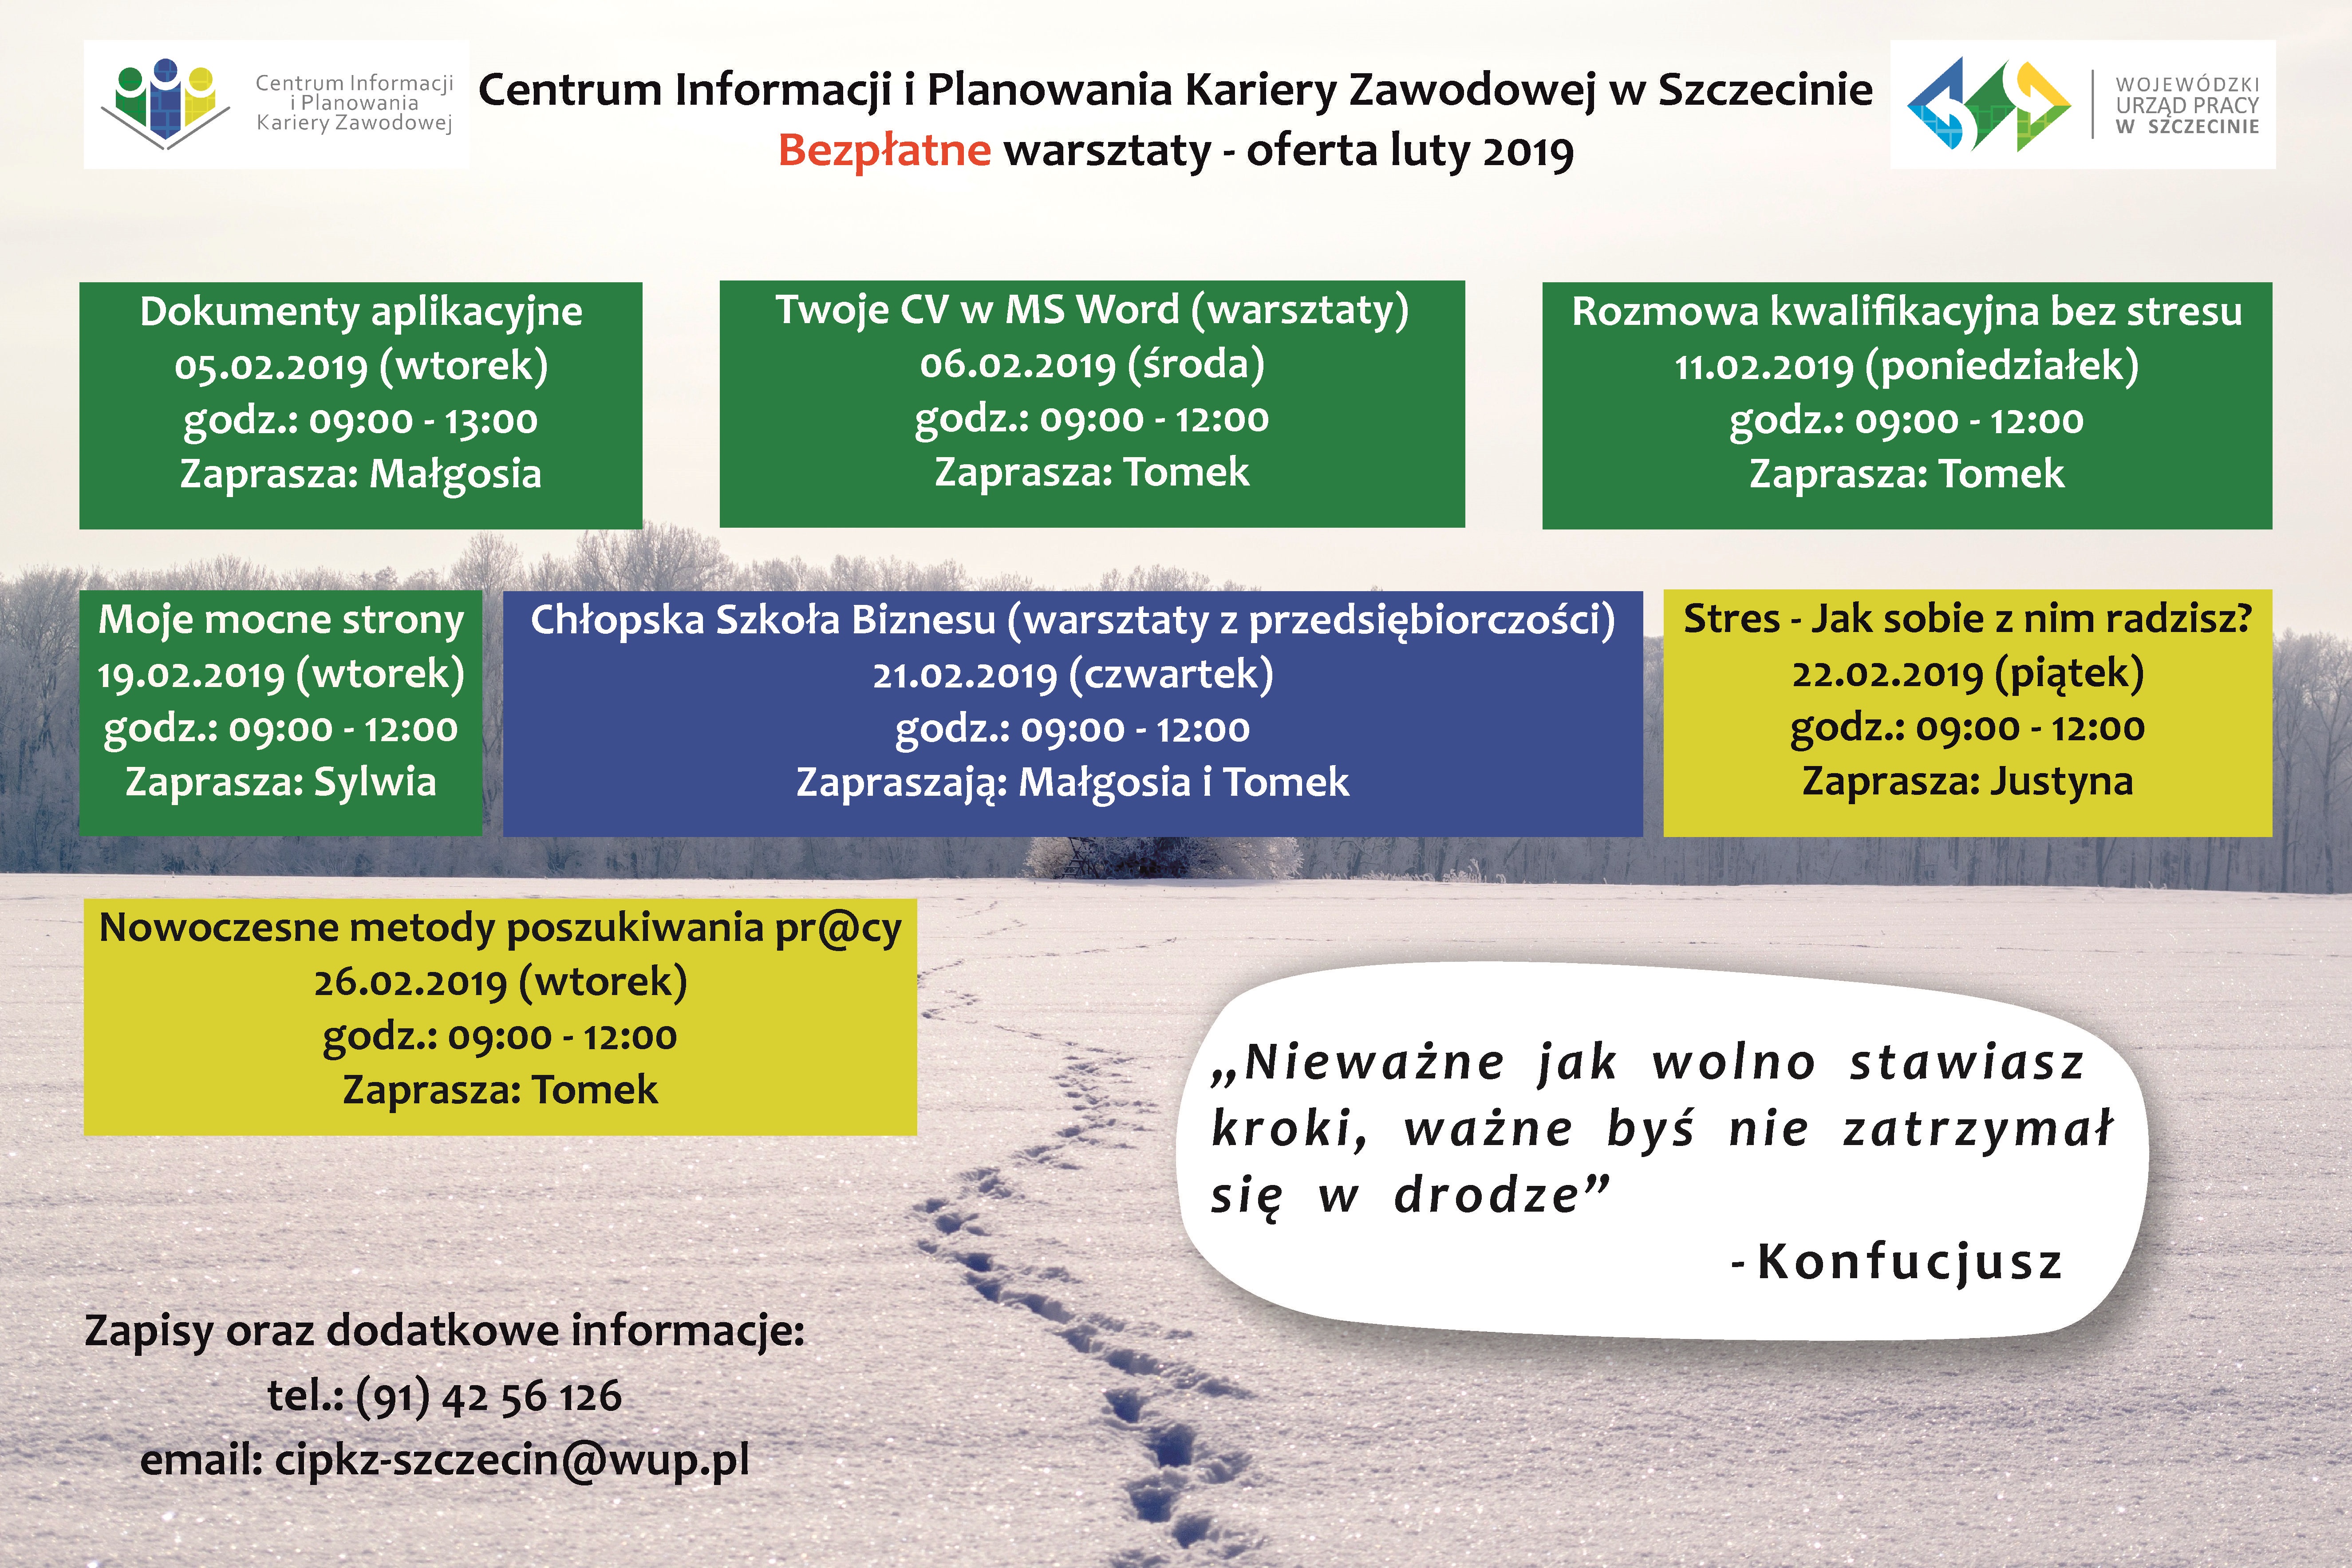 plakat informujący o warsztatach odbywających się w Szczecinie w miesiącu lutym 2019